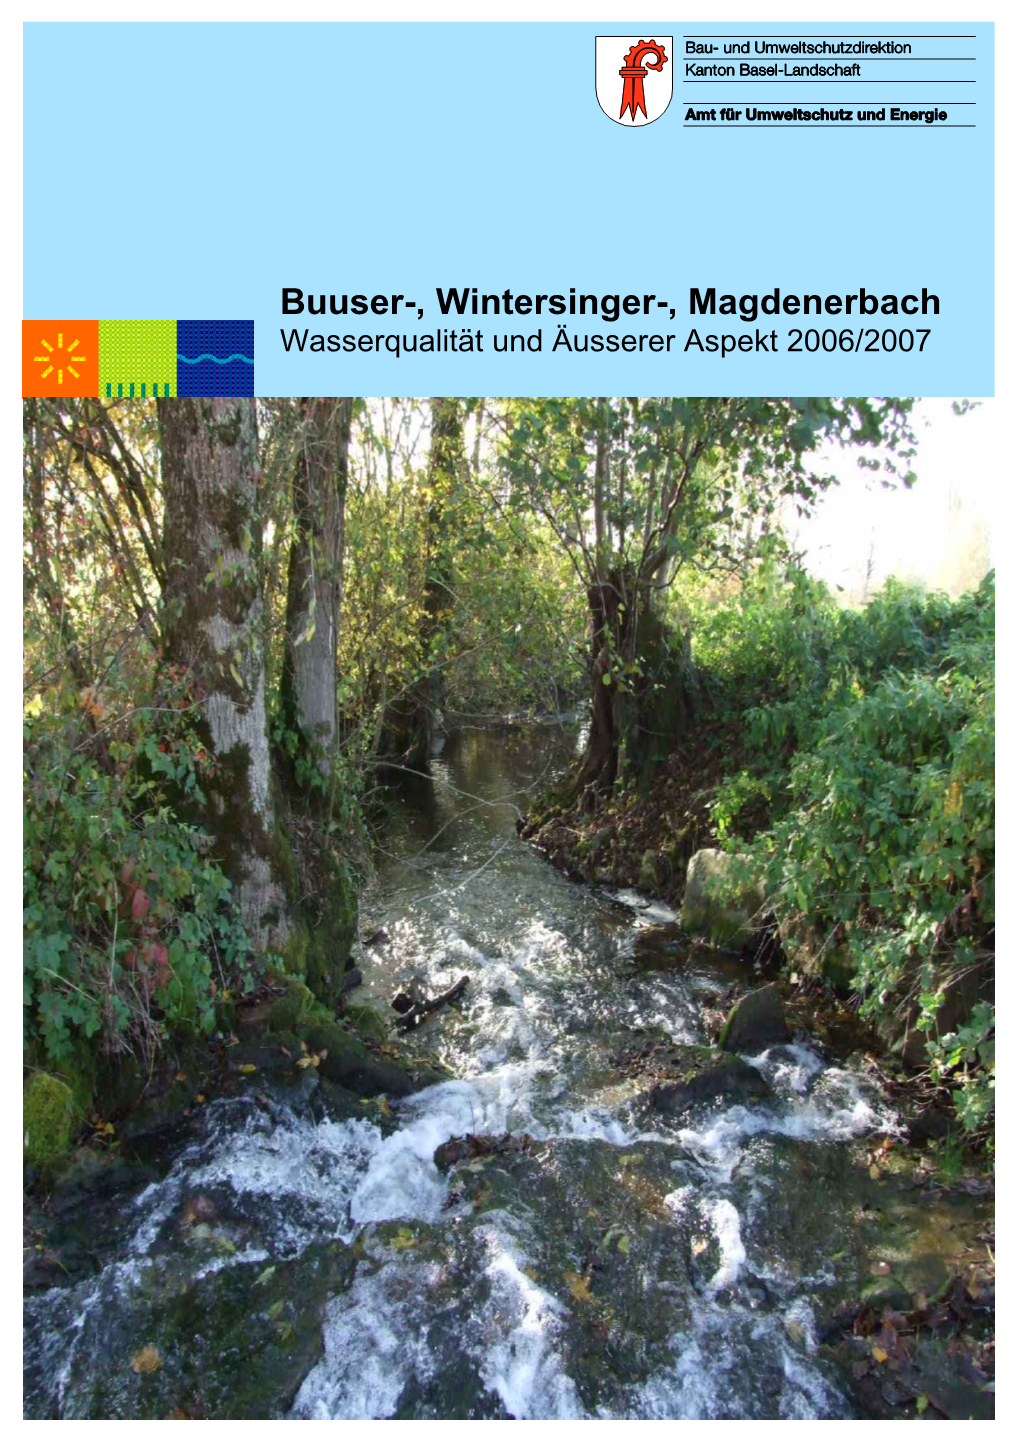 Buuser-, Wintersinger-, Magdenerbach Wasserqualität Und Äusserer Aspekt 2006/2007